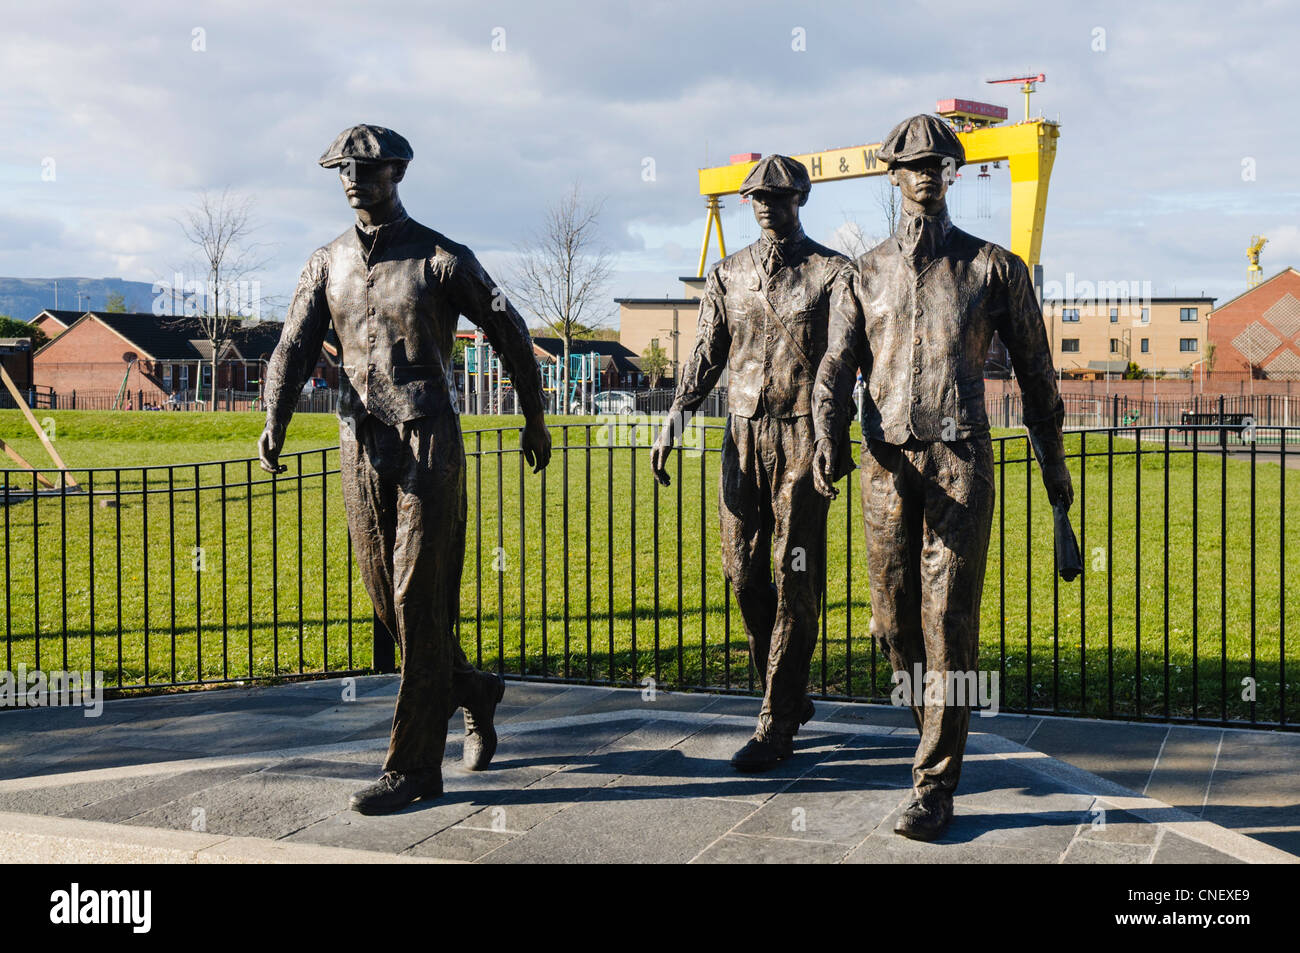 Statues de triage pour commémorer les hommes qui travaillaient dans les chantiers navals Harland and Wolff. Artiste : Ross Wilson. Banque D'Images